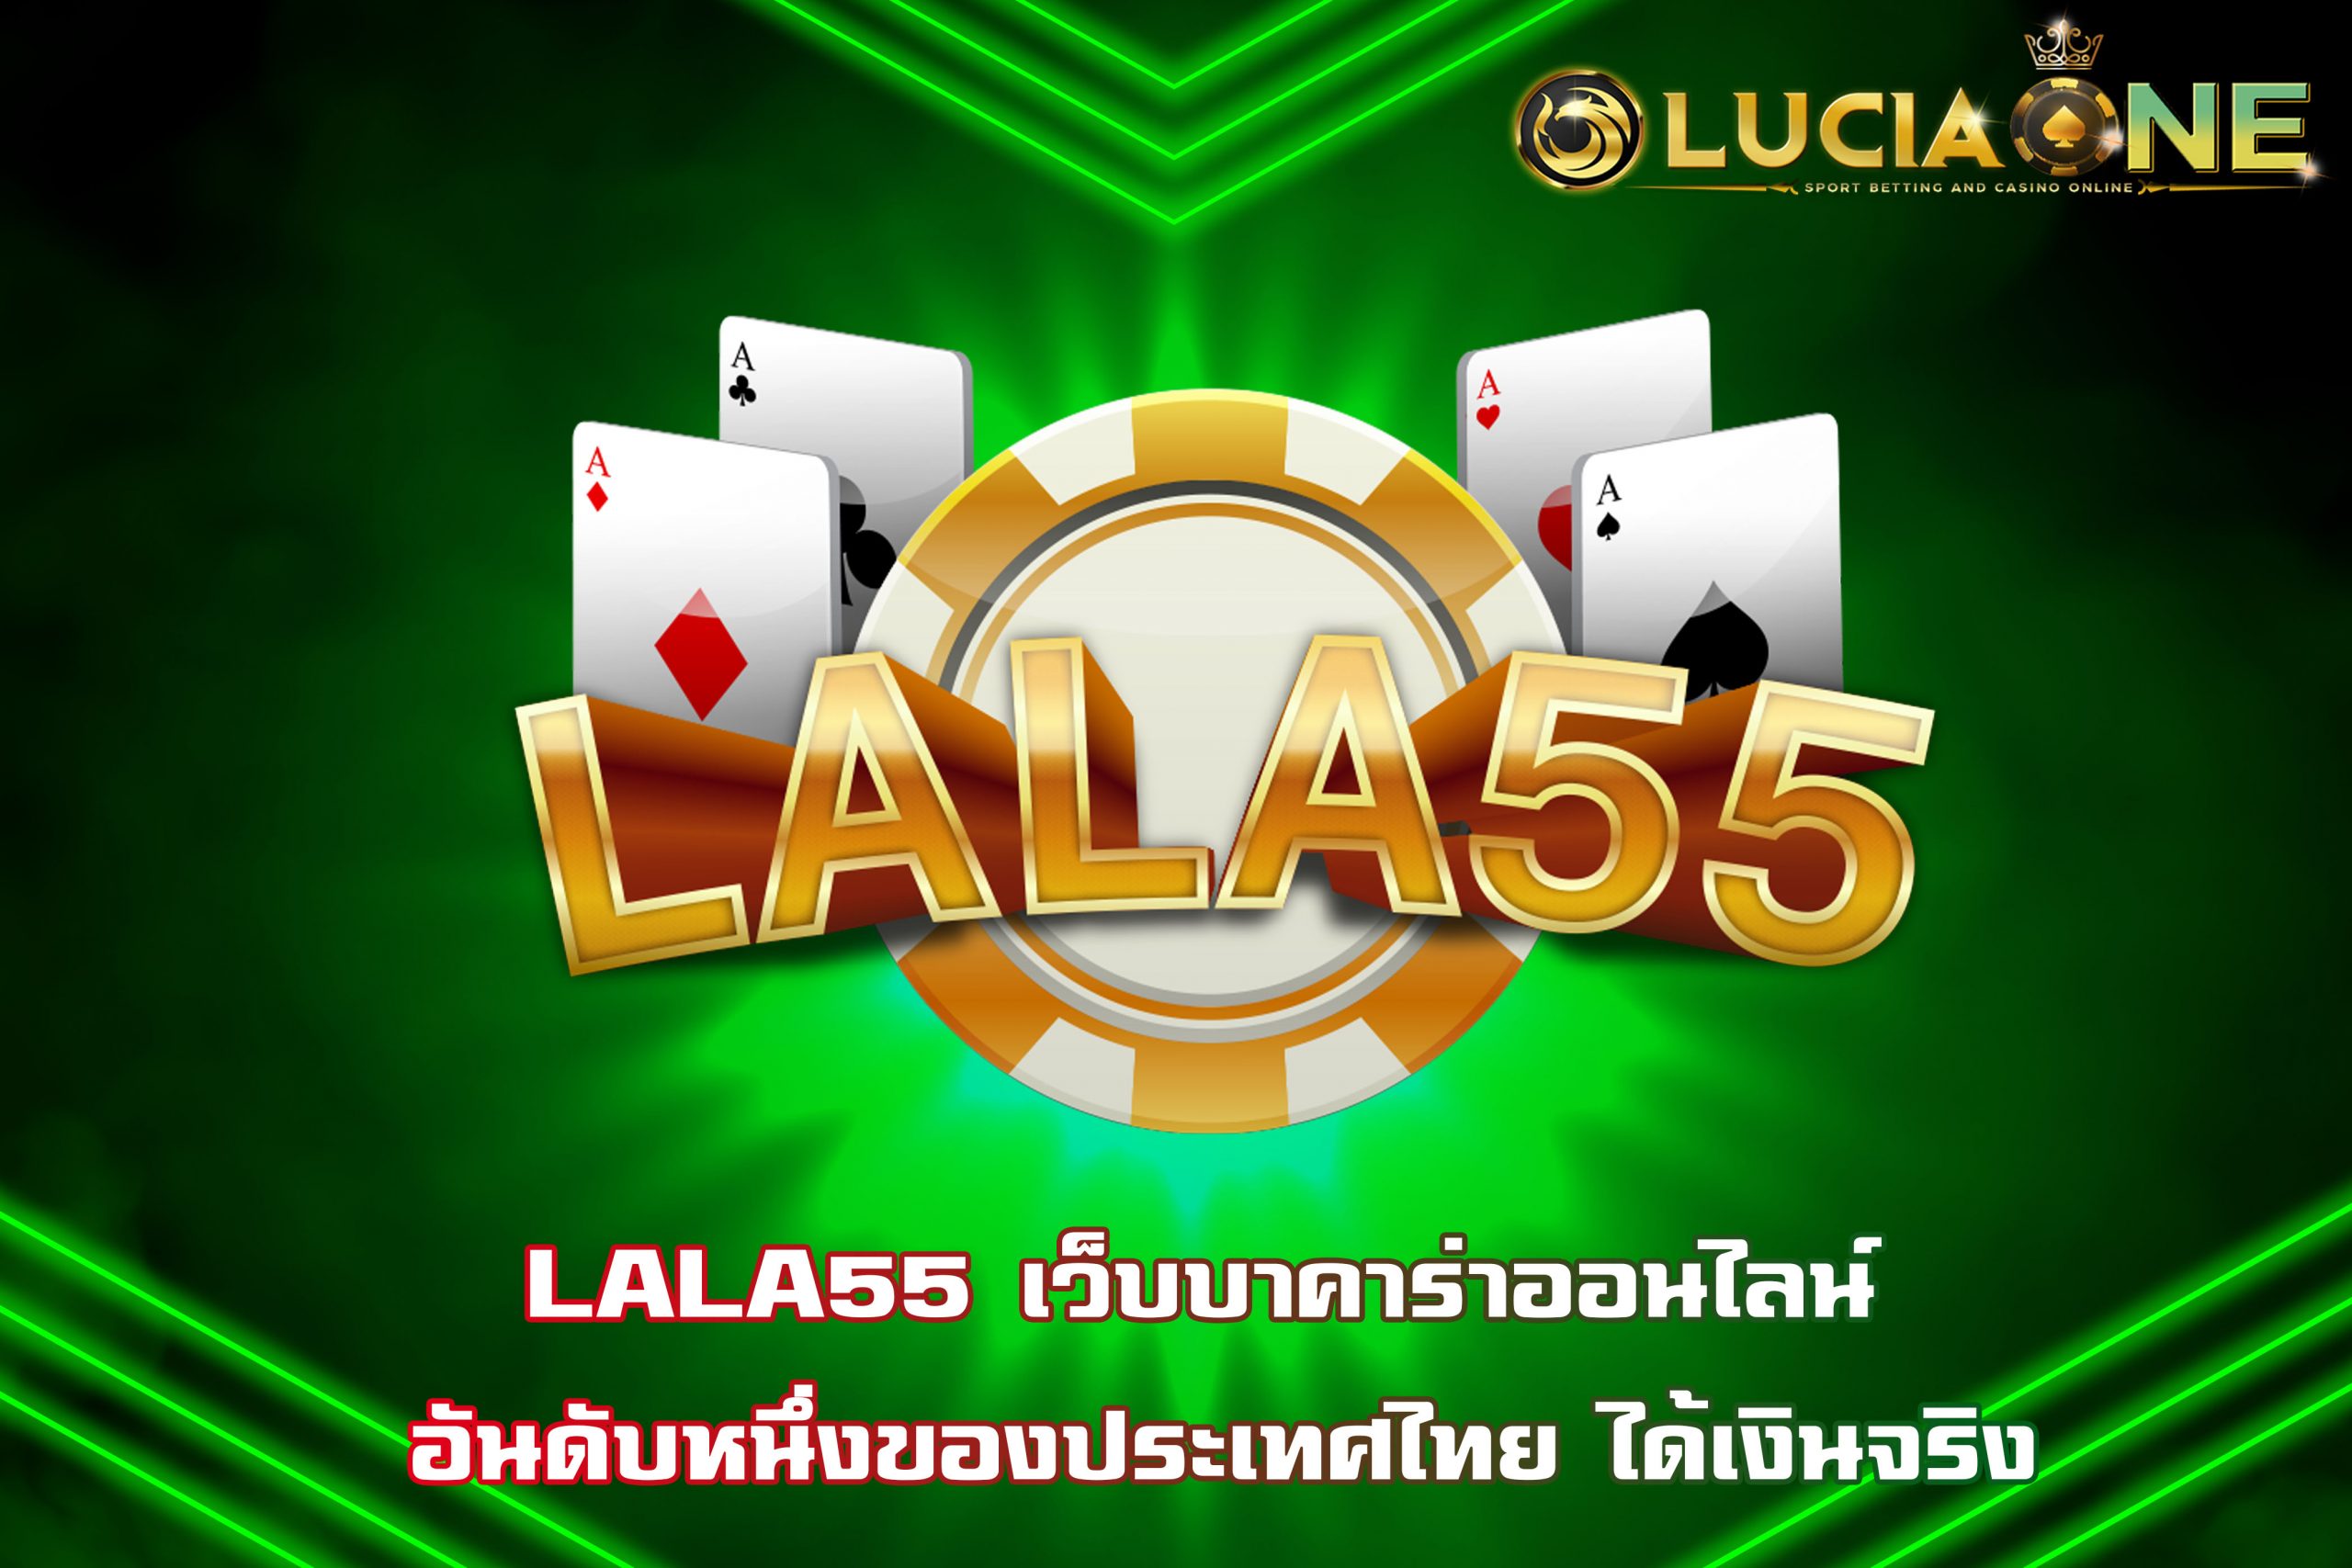 LALA55